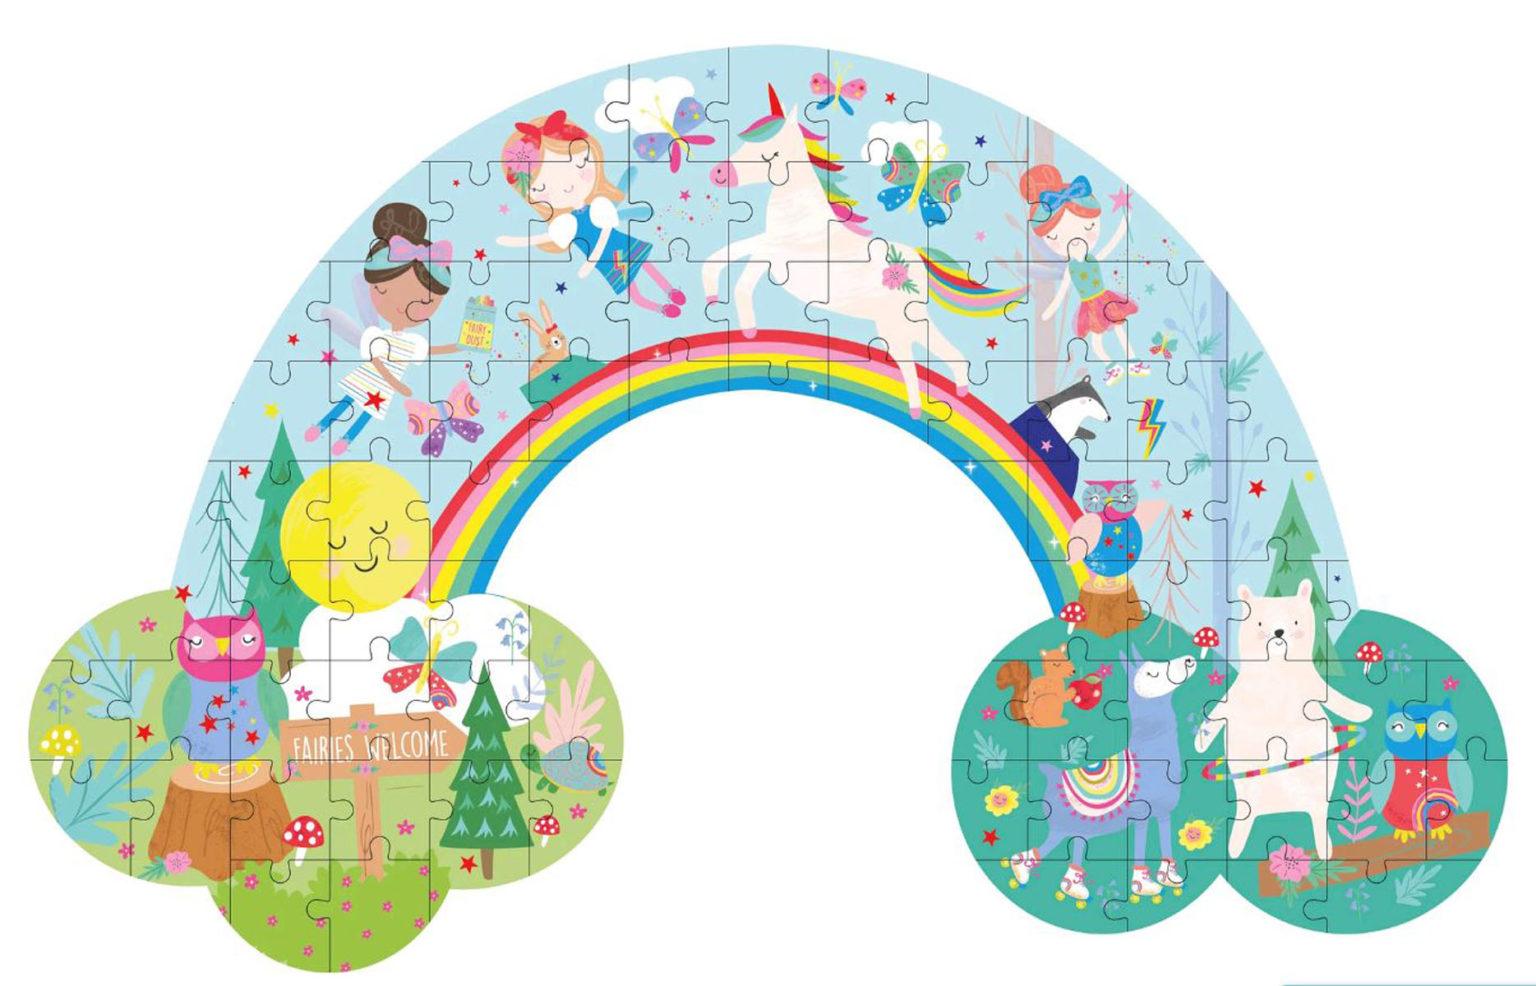 Floss & Rock Jigsaw Puzzle 80 piece - Rainbow Fairy - Toys - Floss & Rock